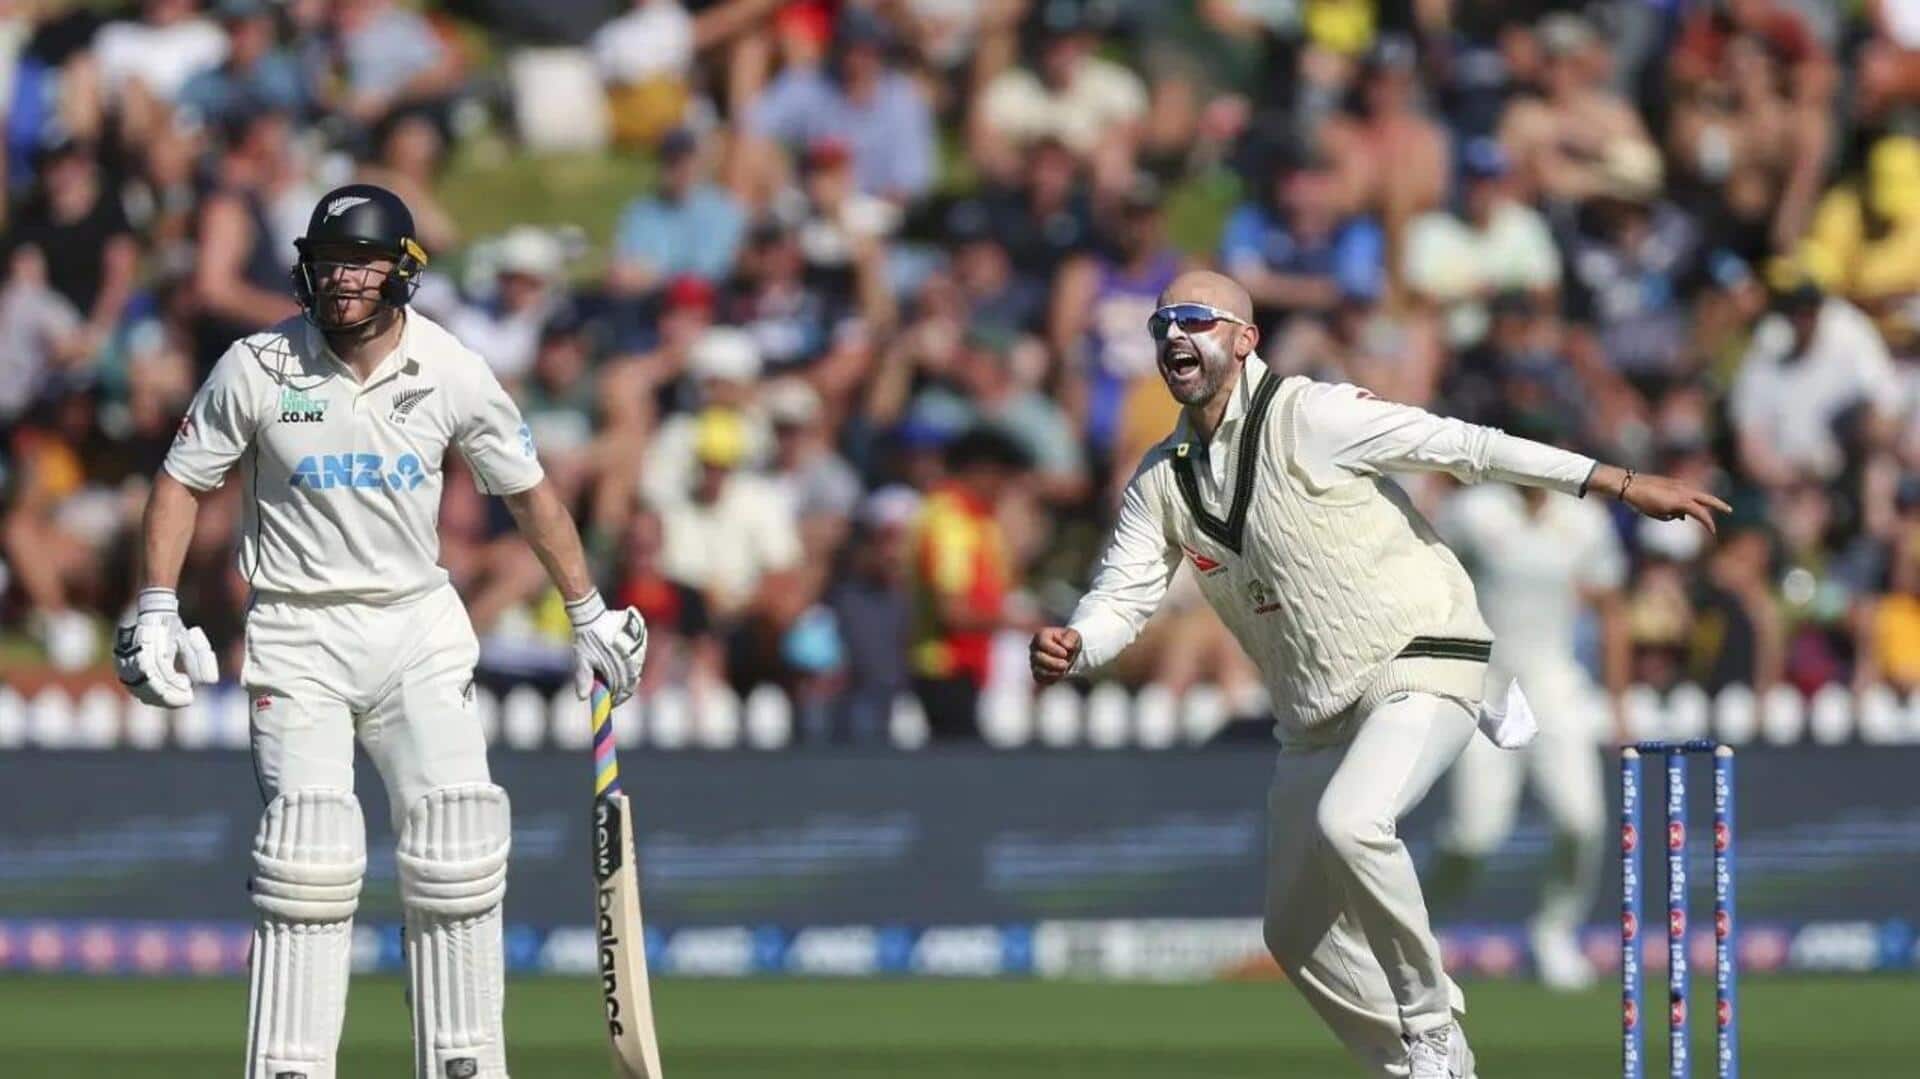 पहला टेस्ट: नाथन लियोन ने न्यूजीलैंड के खिलाफ तीसरी बार झटके 4 विकेट, वाल्श को पछाड़ा